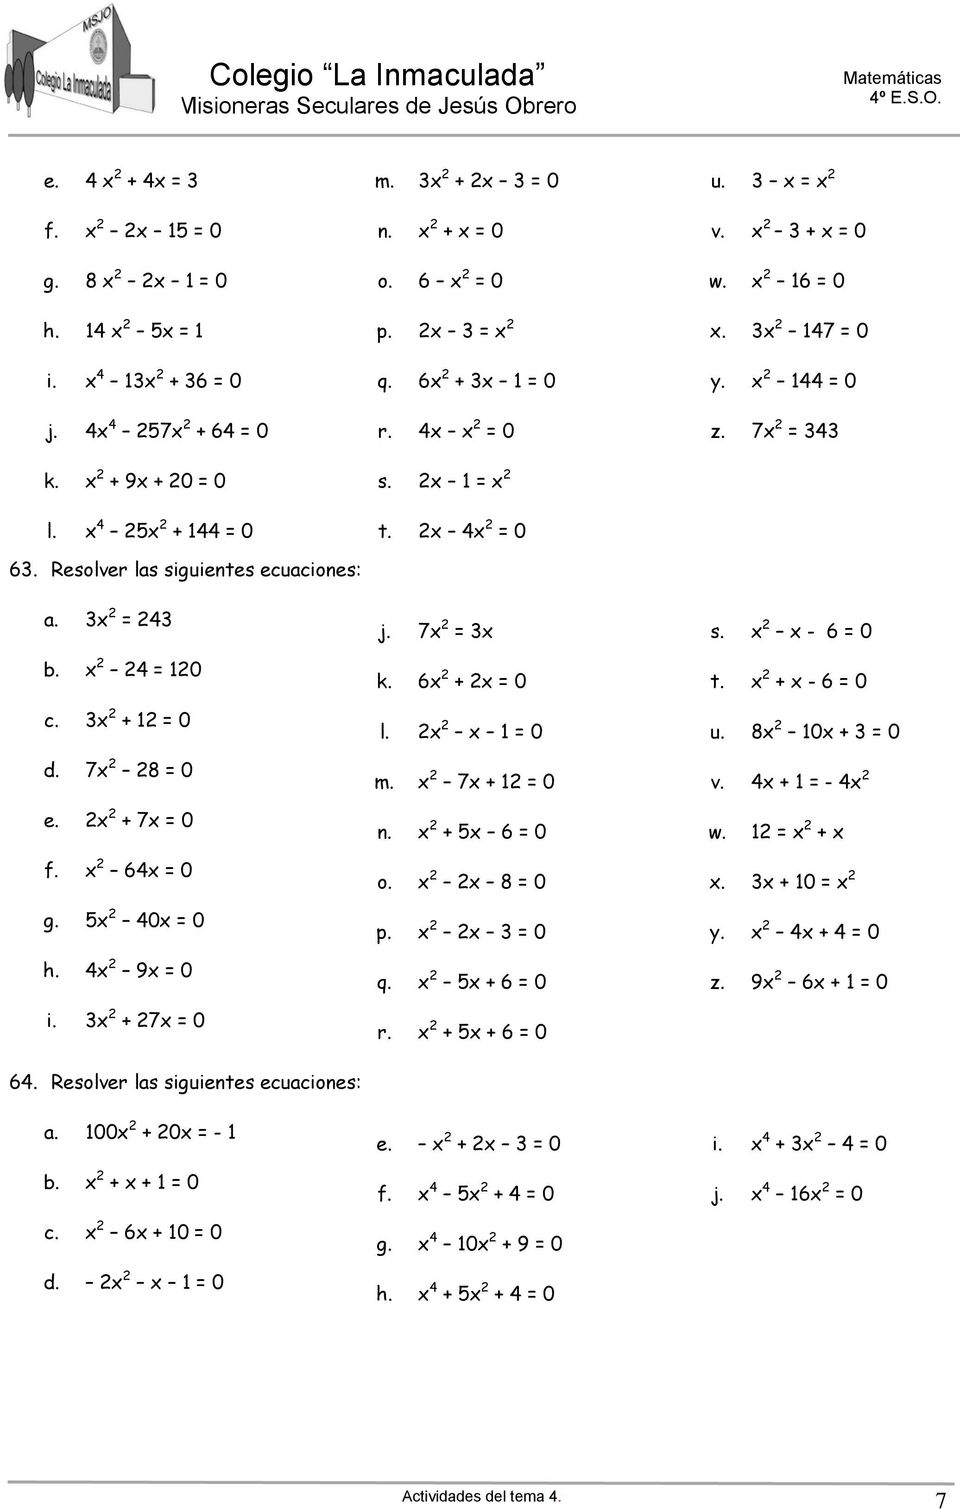 Resolver las siguientes ecuaciones: j. 7 = k. 6 + = 0 l. = 0 m. 7 + = 0 n. + 6 = 0 o. 8 = 0 p. = 0 q. + 6 = 0 r. + + 6 = 0 s. - 6 = 0 t. + - 6 = 0 u.